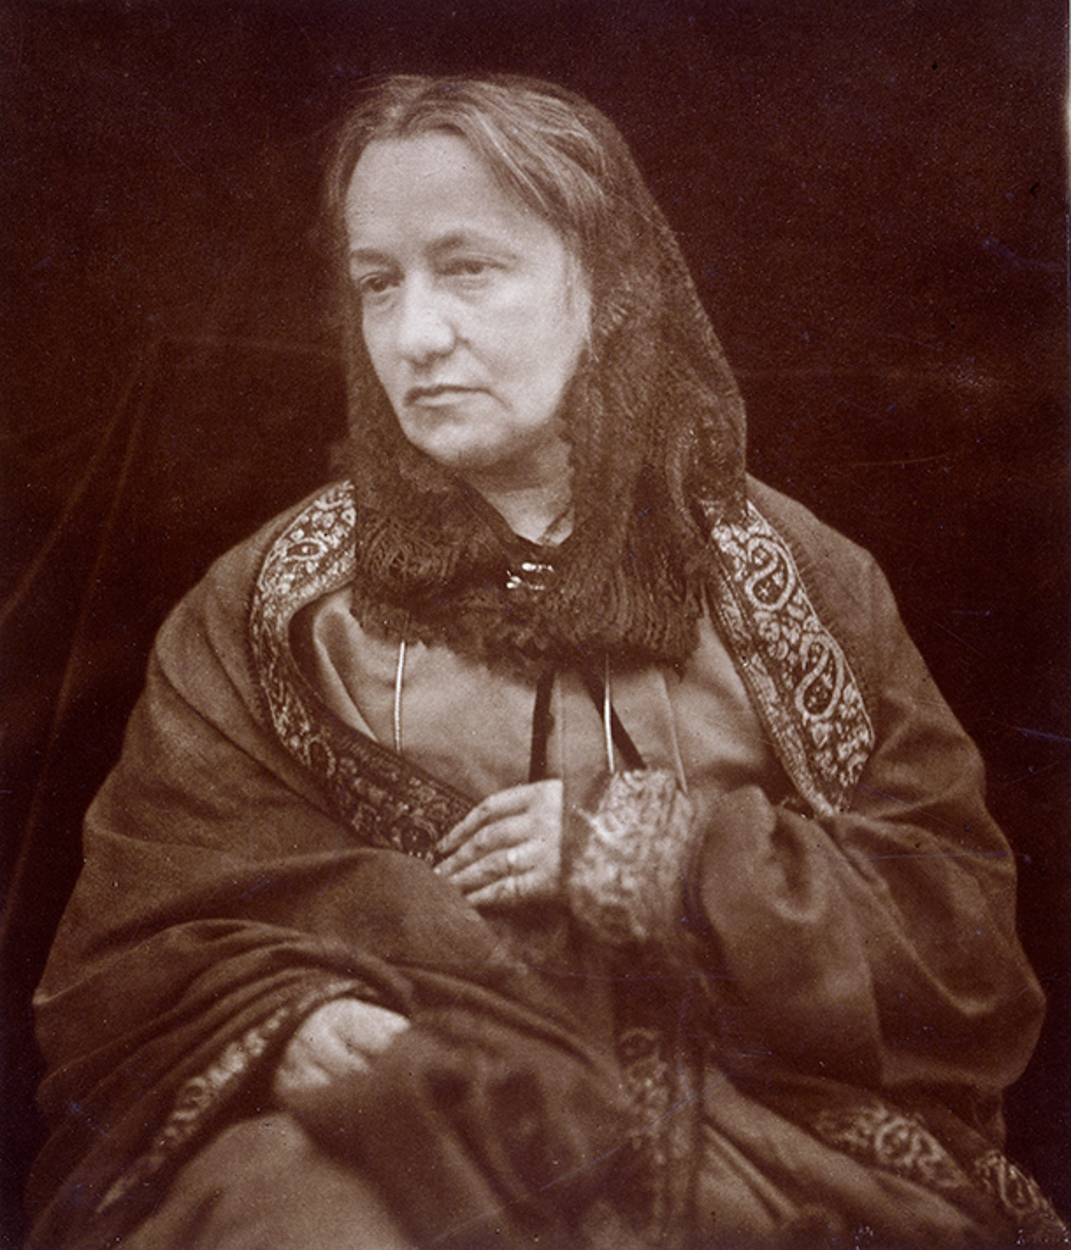 Julia Margaret Cameron - June 11, 1815 - January 26, 1879